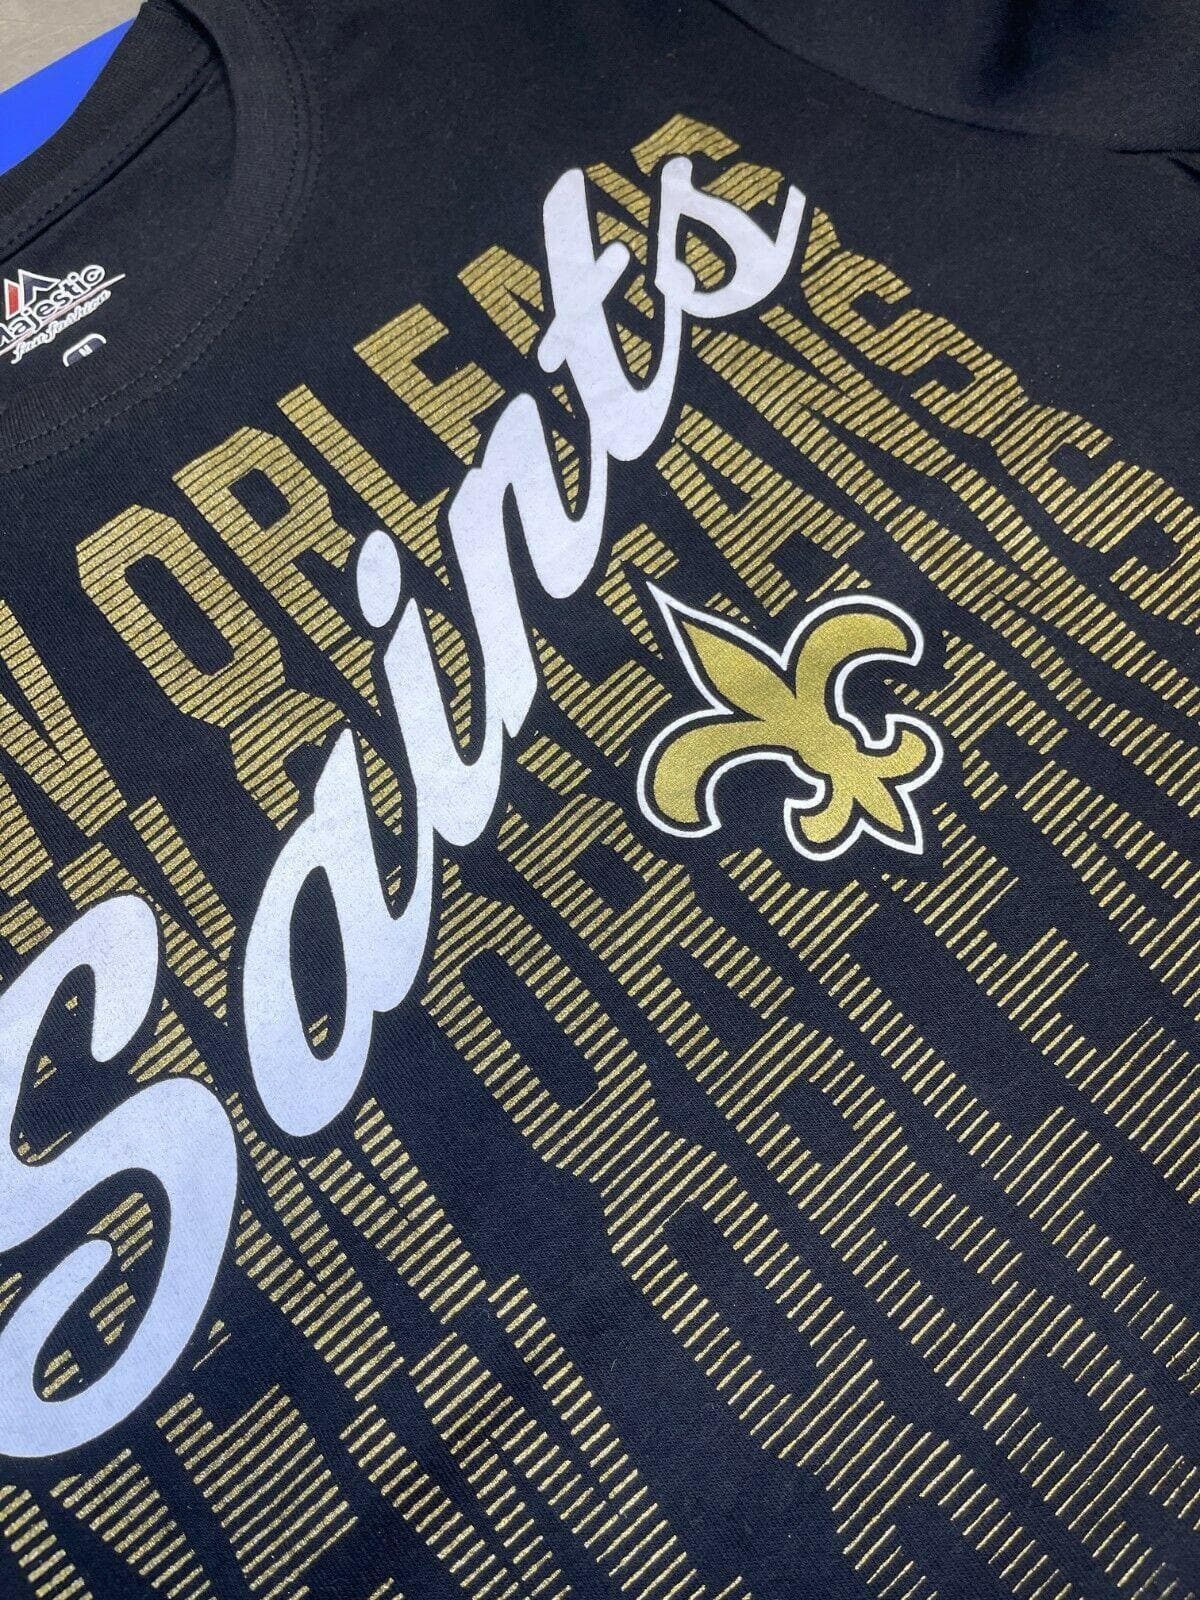 NFL New Orleans Saints Majestic Women's Plus Size T-Shirt 1X NWT